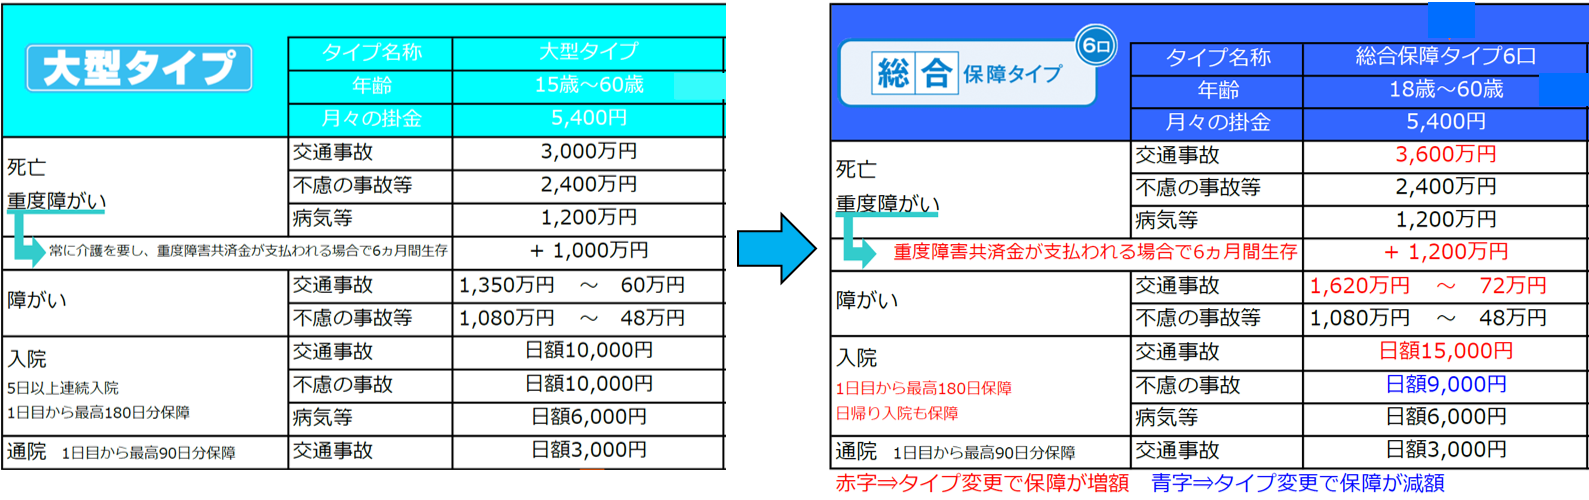 大型タイプ→総合保障タイプ6口.png